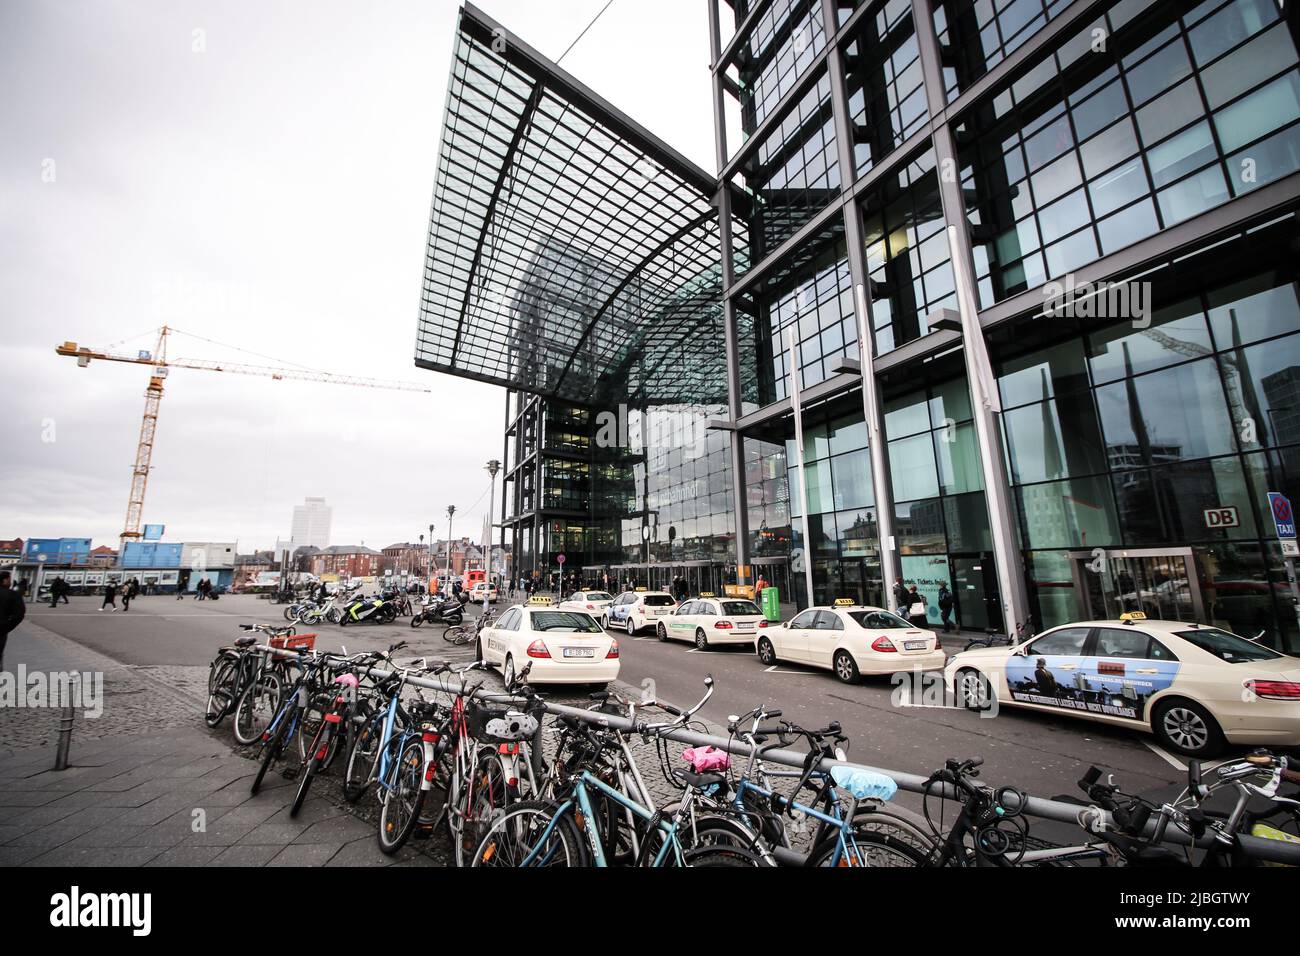 Entrée principale de la gare Hauptbahnhof de Berlin. Hauptbahnhof est la gare principale de Berlin. Il y a des taxes et des vélos garés sur l'image. Banque D'Images